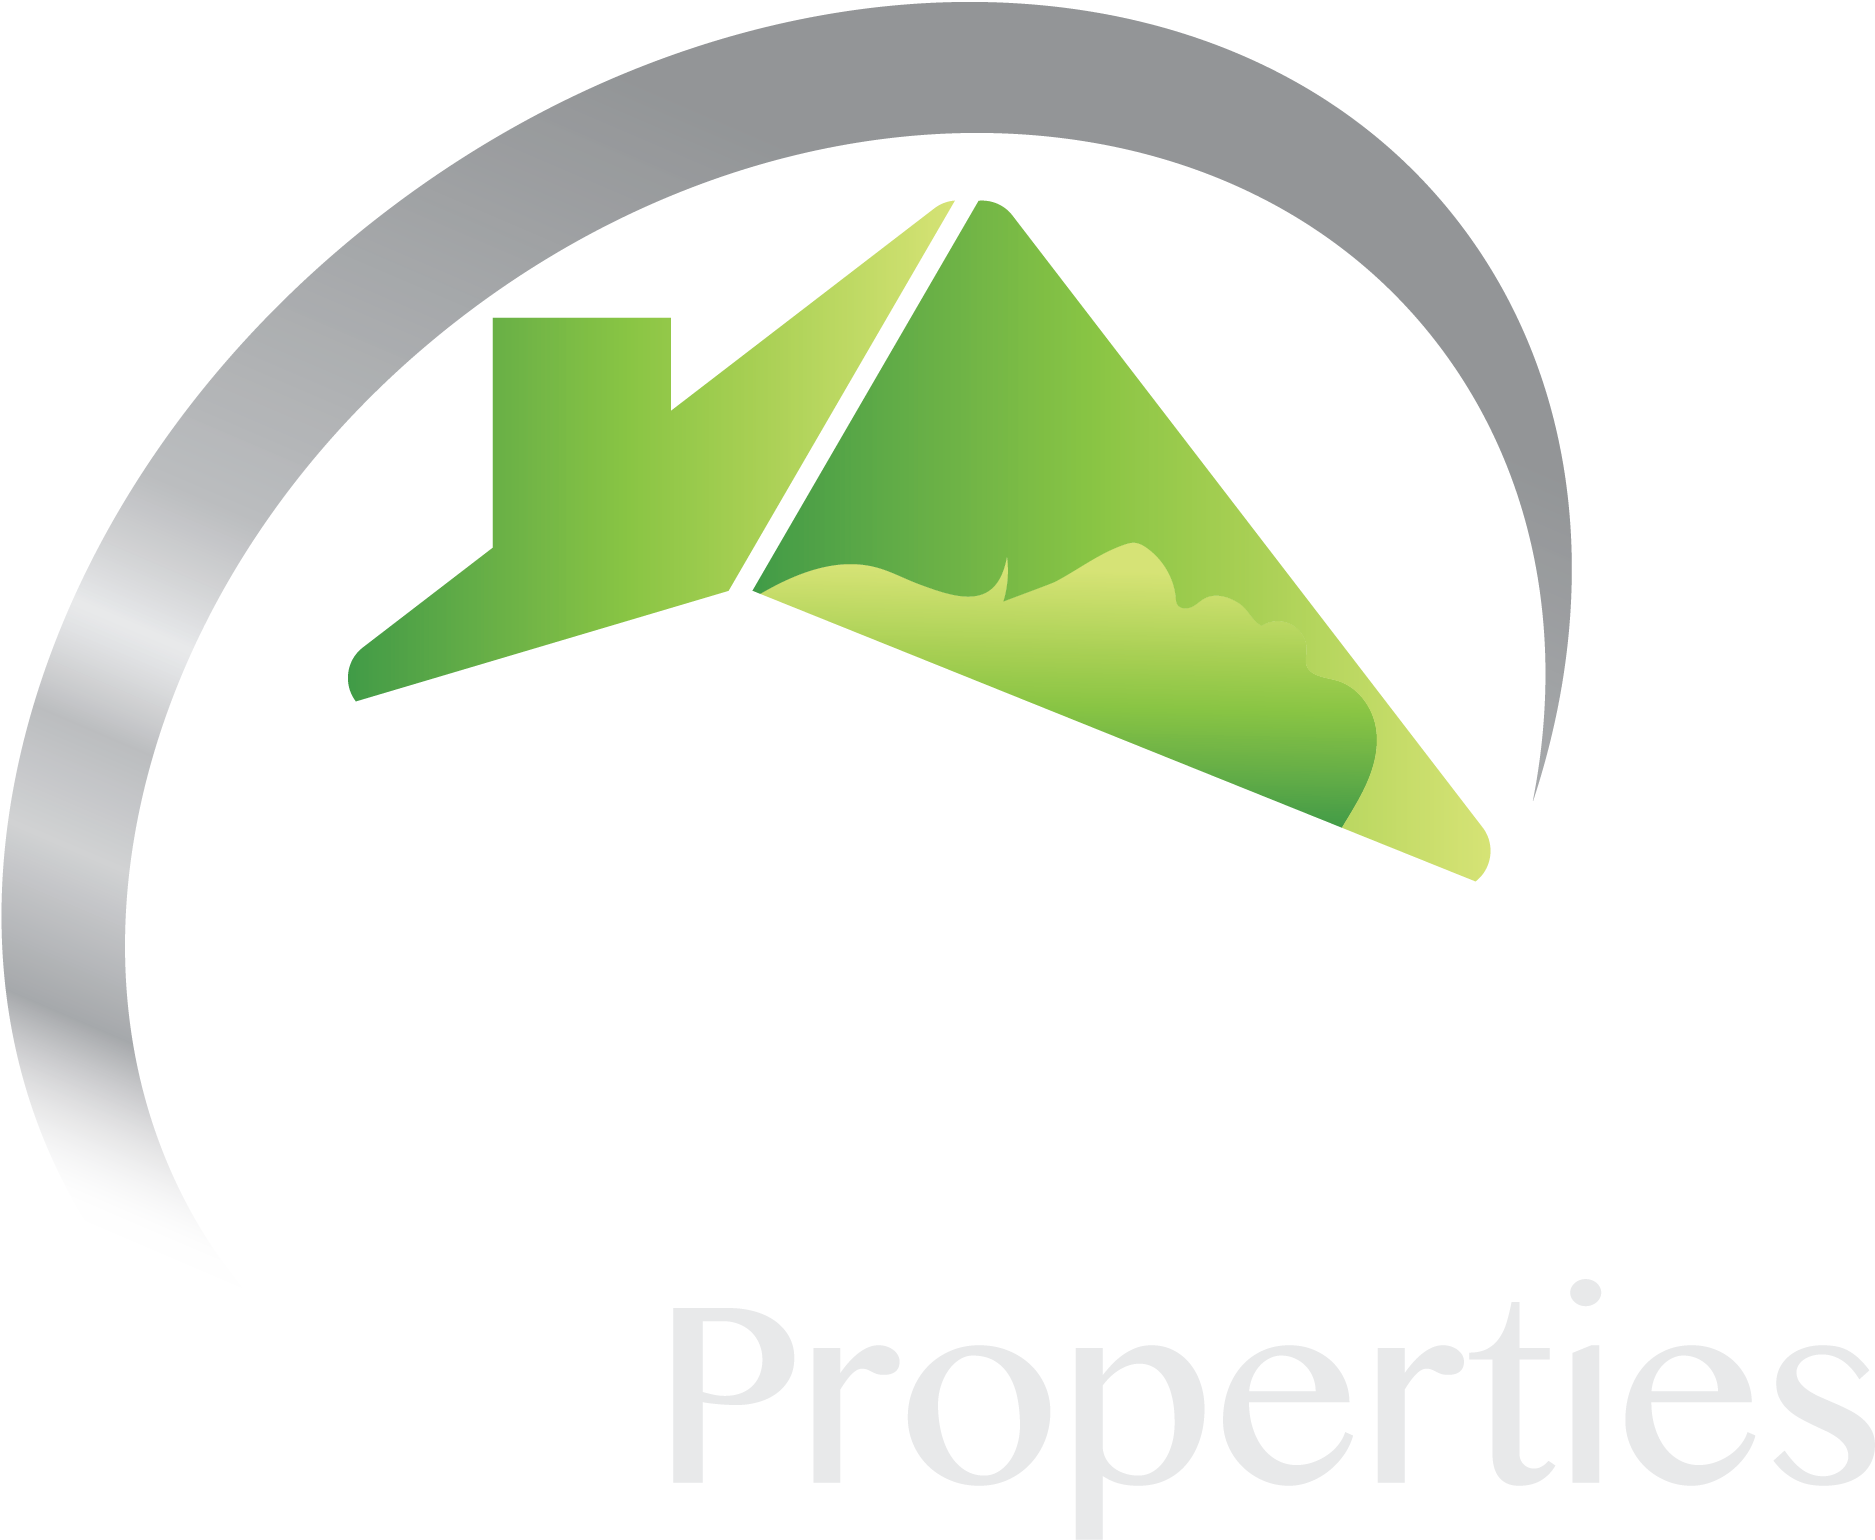 ELM Properties